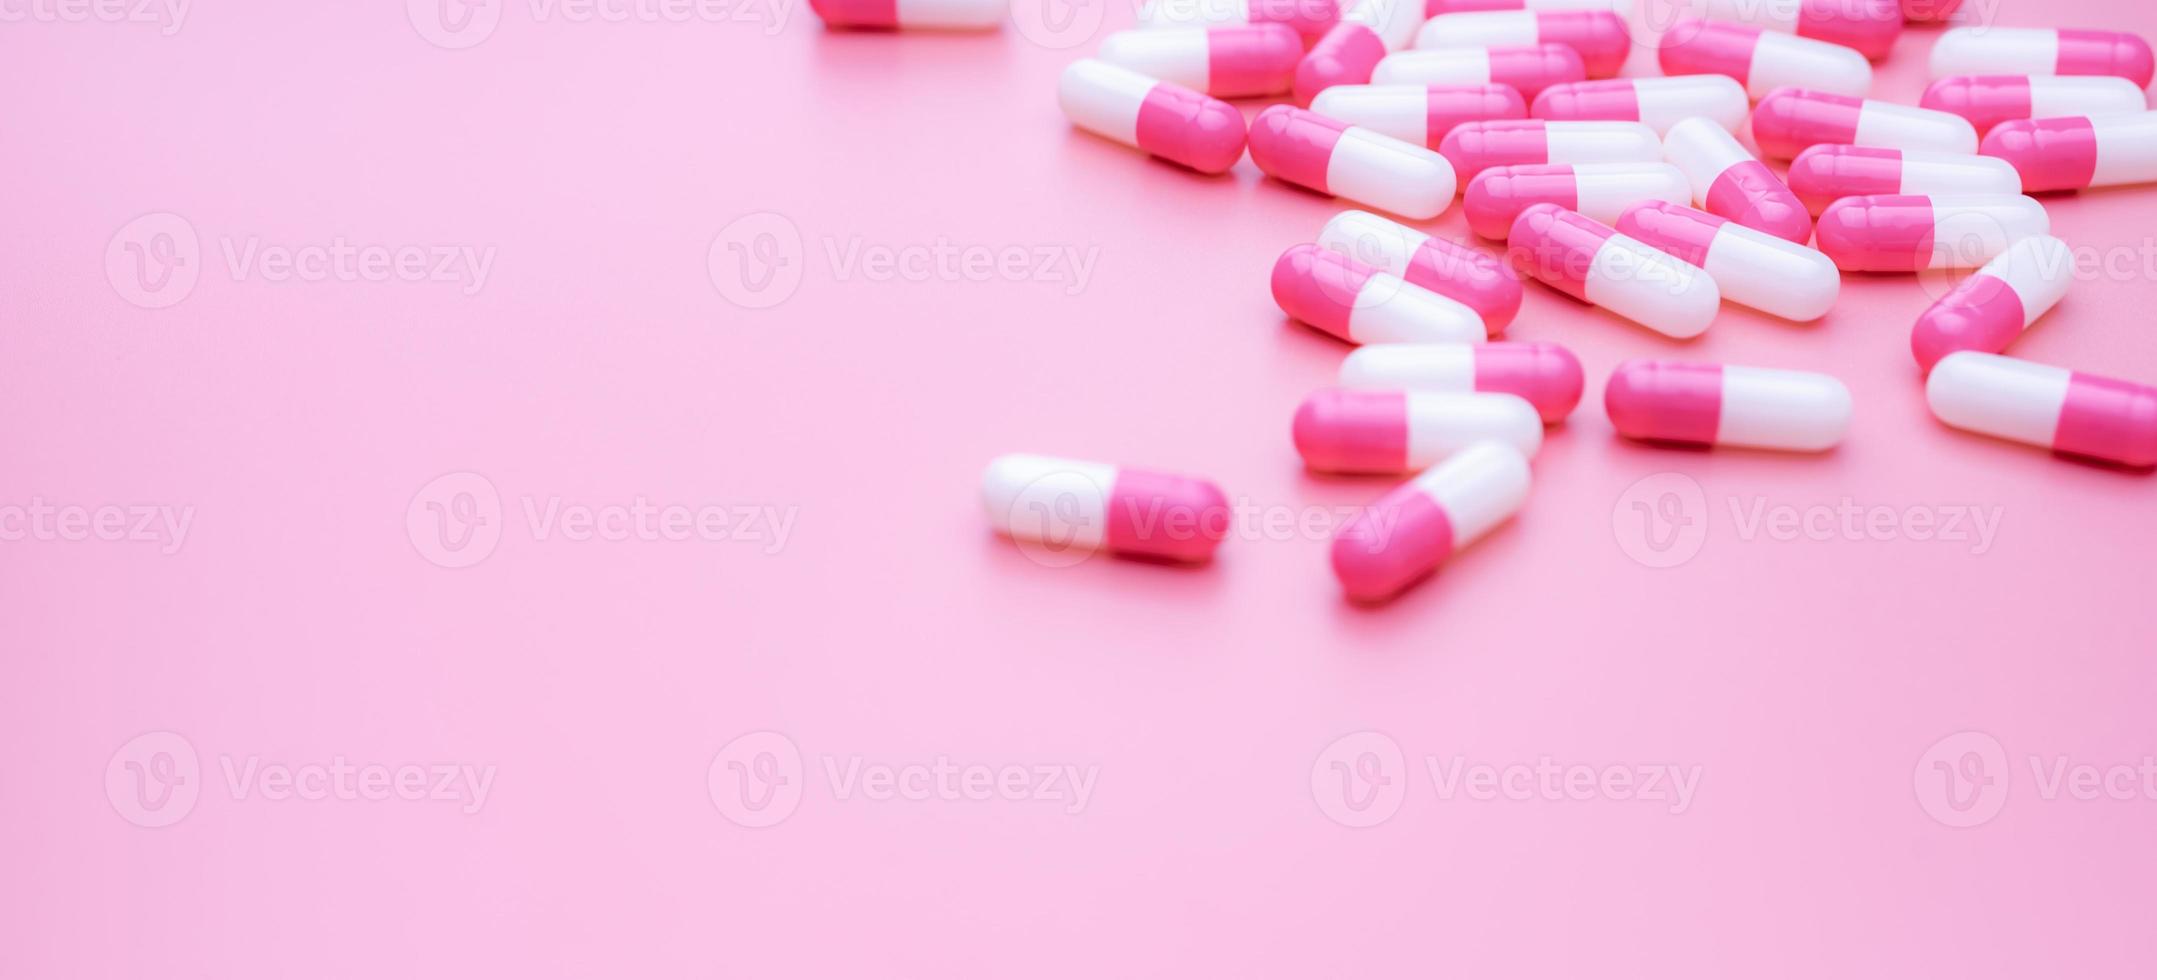 píldoras de cápsula antibiótica de color rosa-blanco sobre fondo rosa. resistencia a los antibióticos. pastillas de cápsula esparcidas sobre fondo rosa. uso de medicamentos en el hospital. medicamentos con receta. Uso inteligente de antibióticos. foto